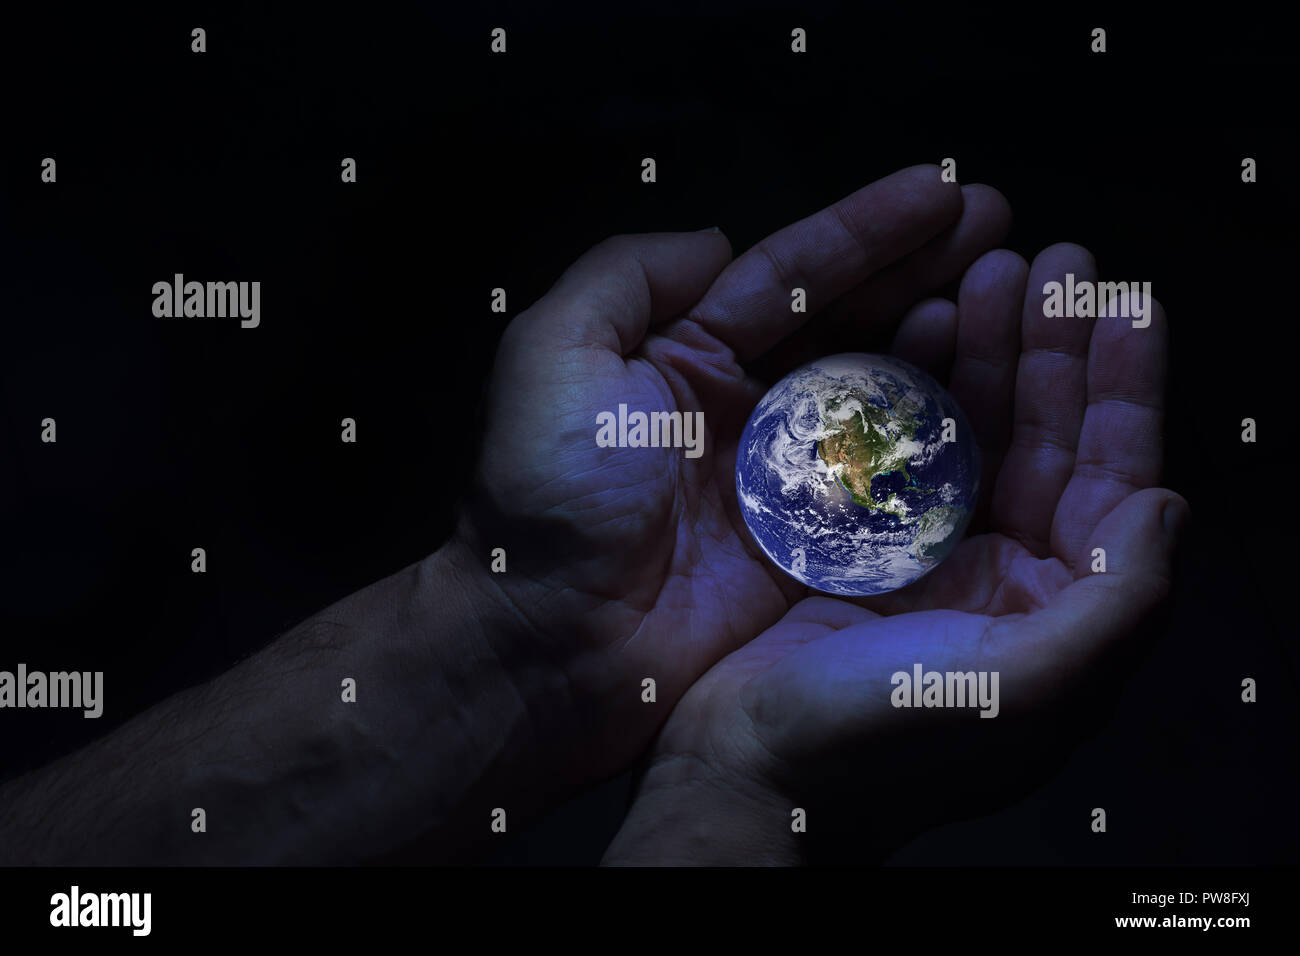 Zwei Hände schützen die Erde Globus. Elemente dieses Bild von der NASA eingerichtet. Stockfoto